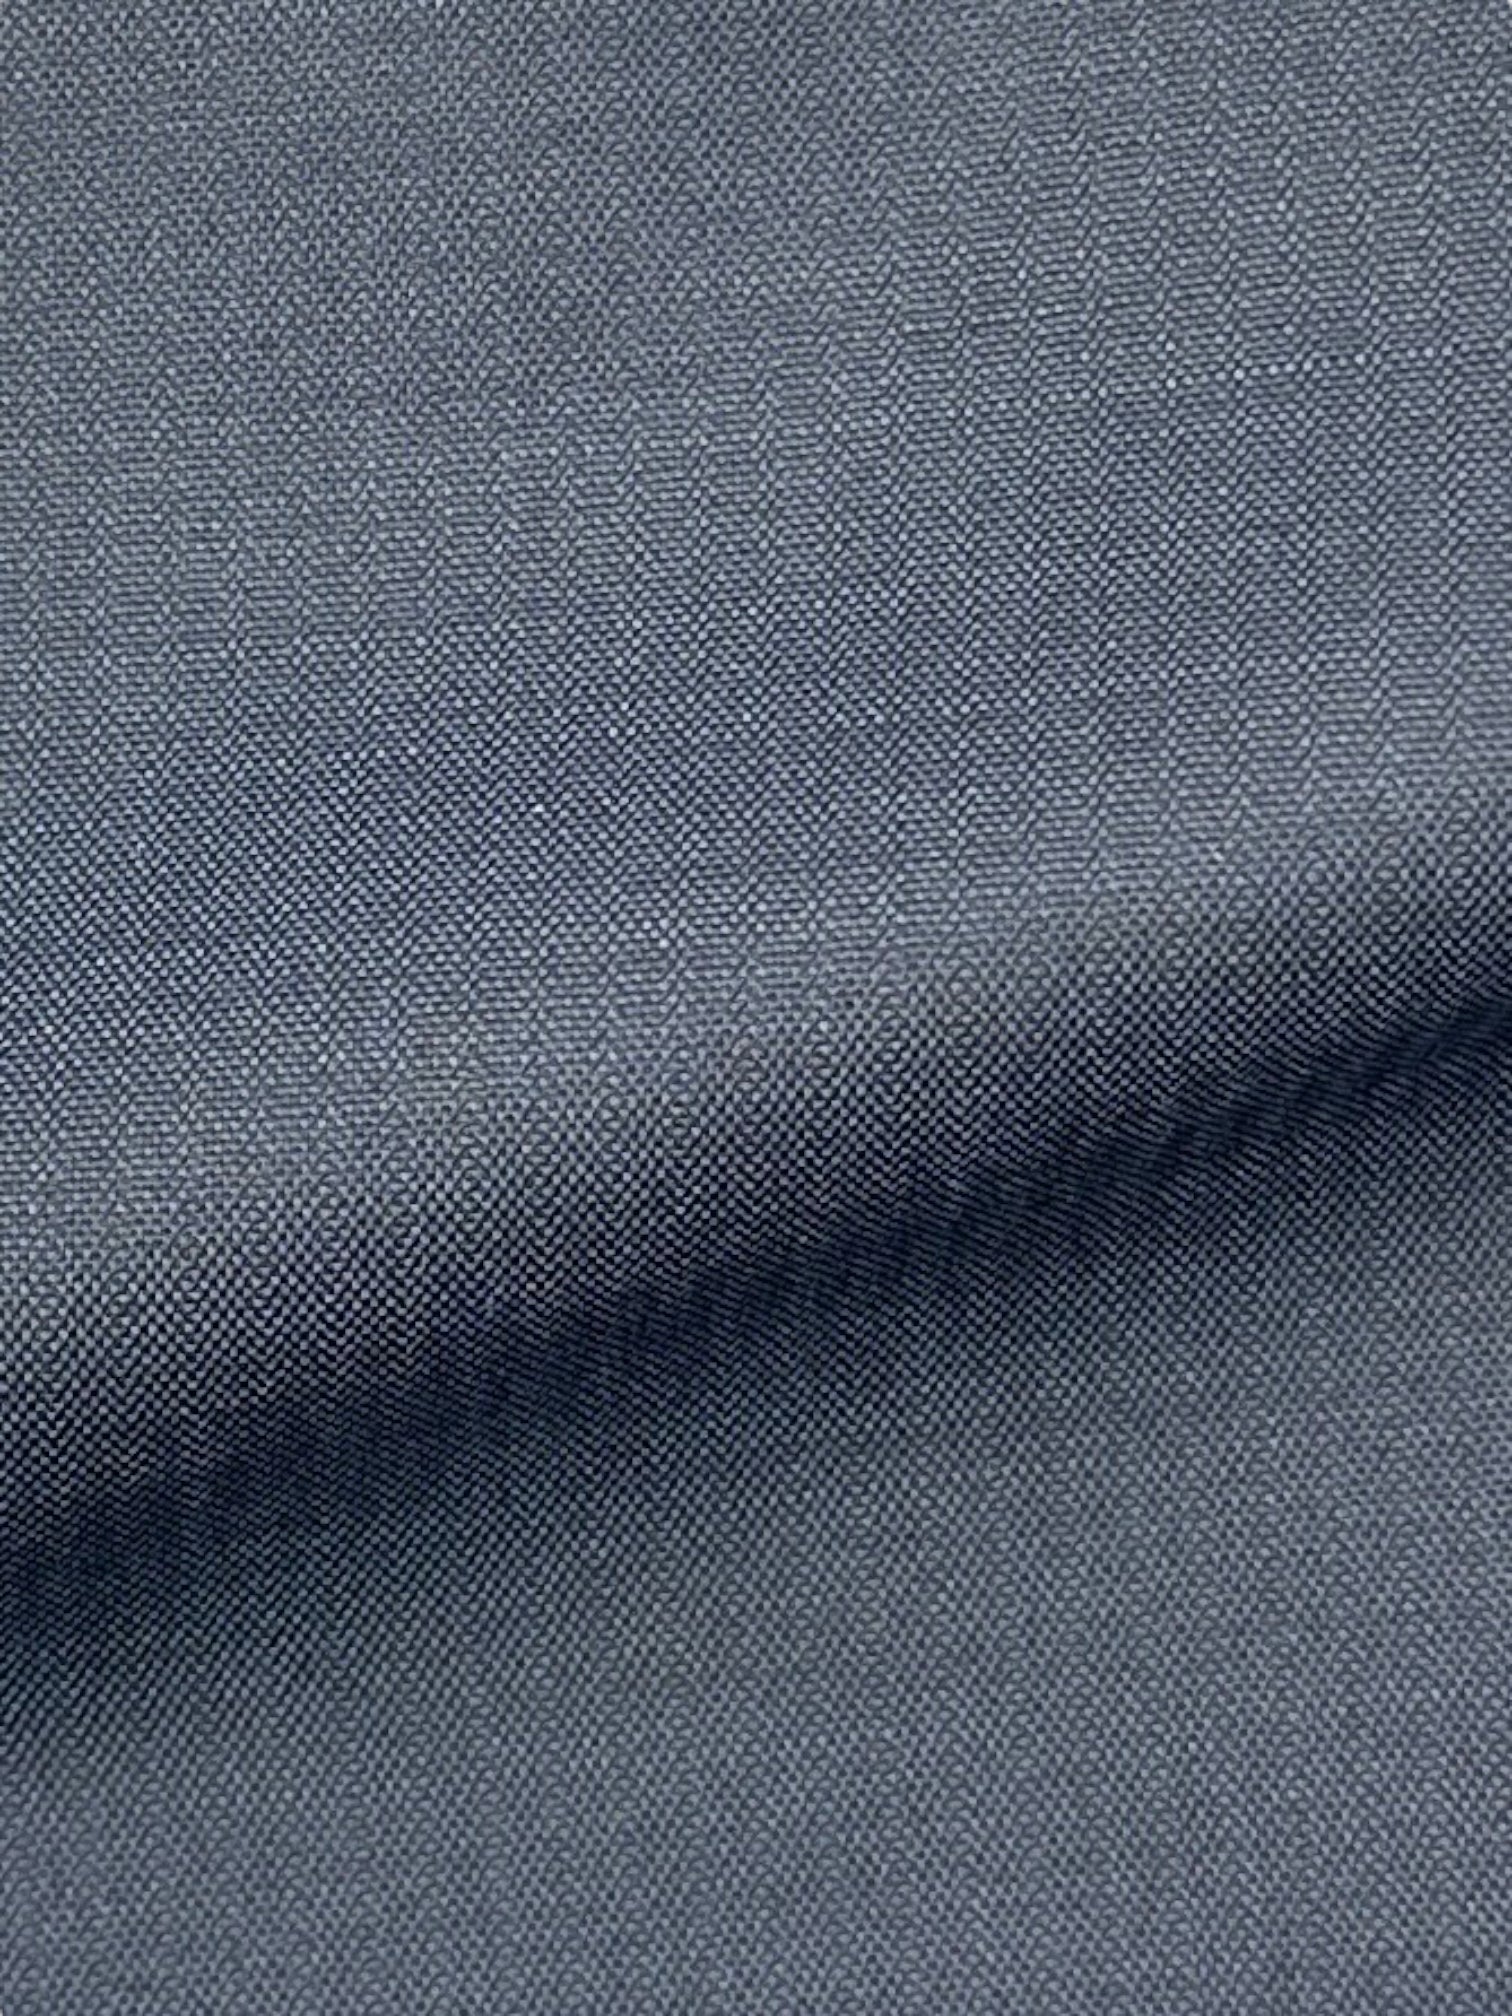 Brioni blauwe wollen broek met micropatroon